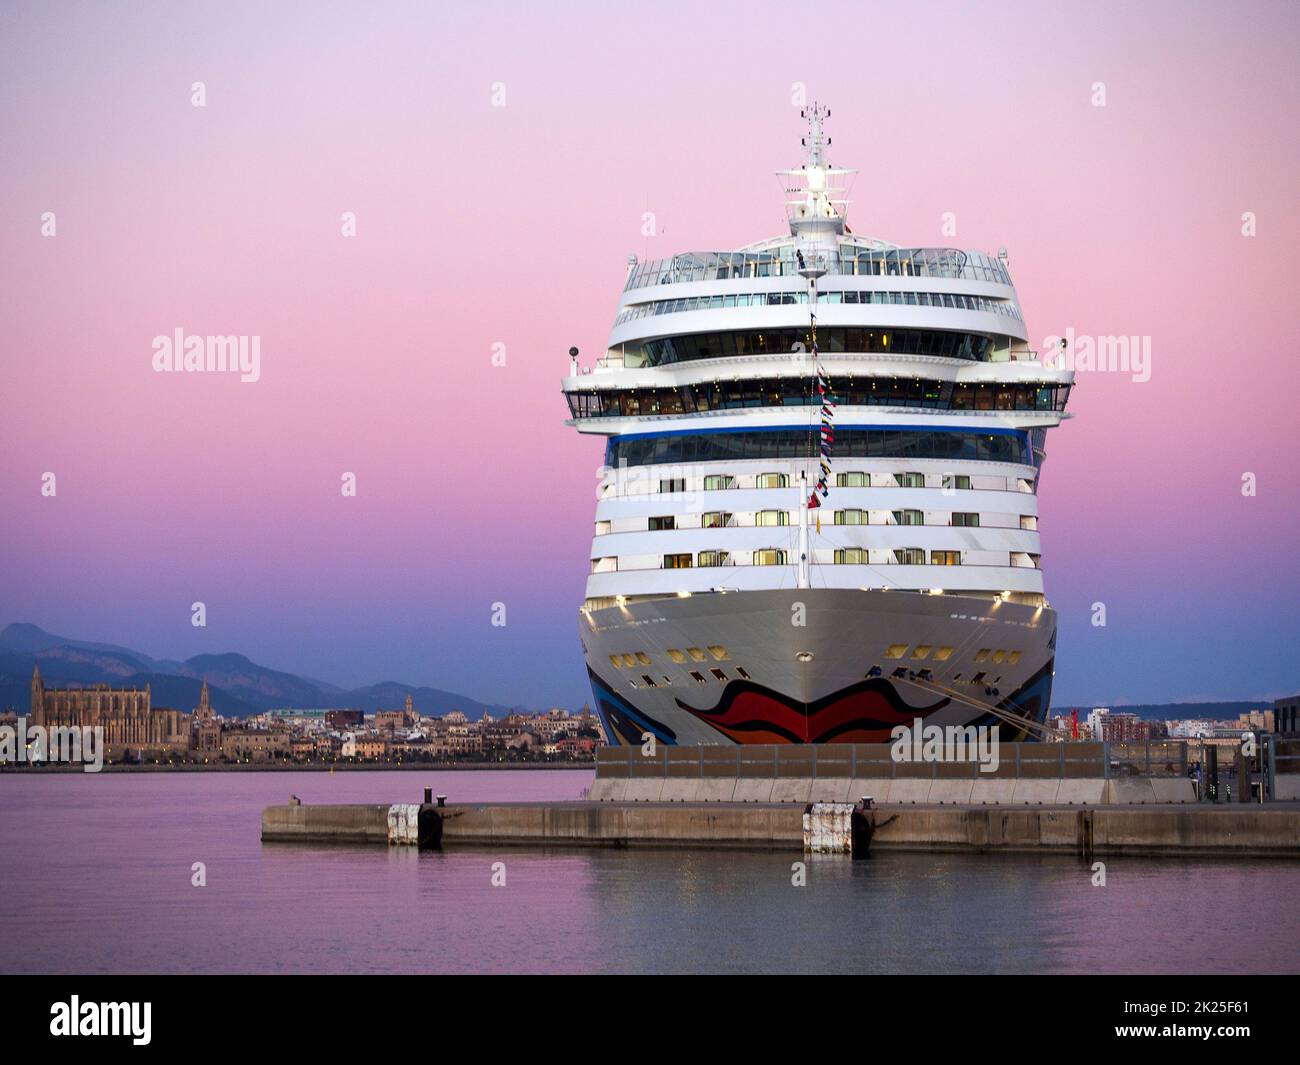 Spain - Mallorca, Aidastella in the Harbor of Palma de Mallorca in the Mediterranean Sea Stock Photo